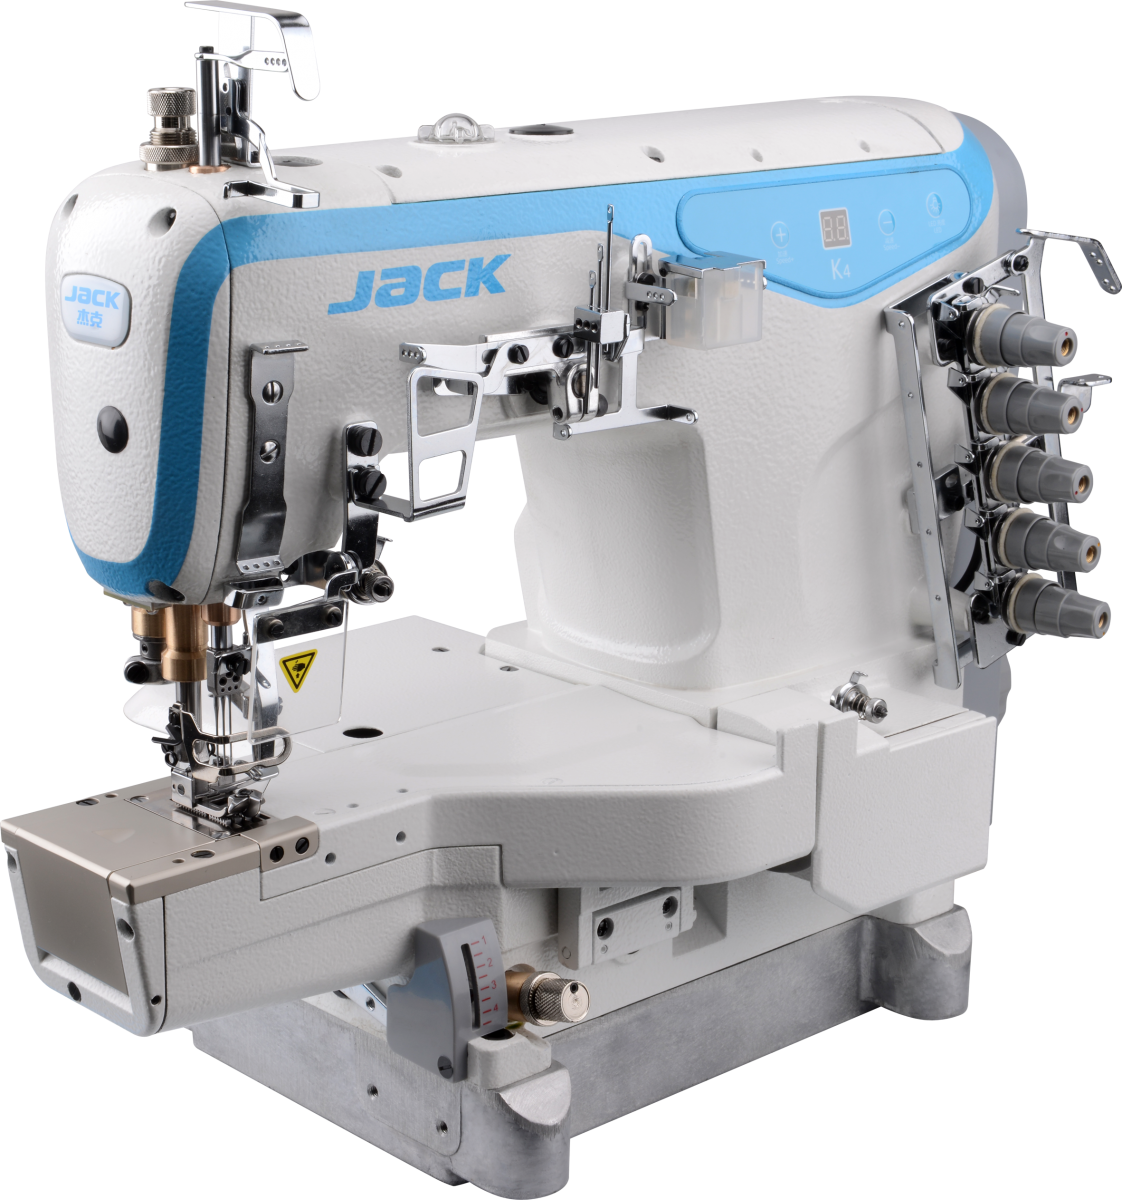 Купить распошивальную машинку. Jack JK-w4-d-02bb. Швейная машина Jack k4-UT. Промышленная швейная машина Jack w4-d-01gb (6,4 мм) (f/h). Промышленная швейная машина Jack w4-UT-01gb (5,6 мм).